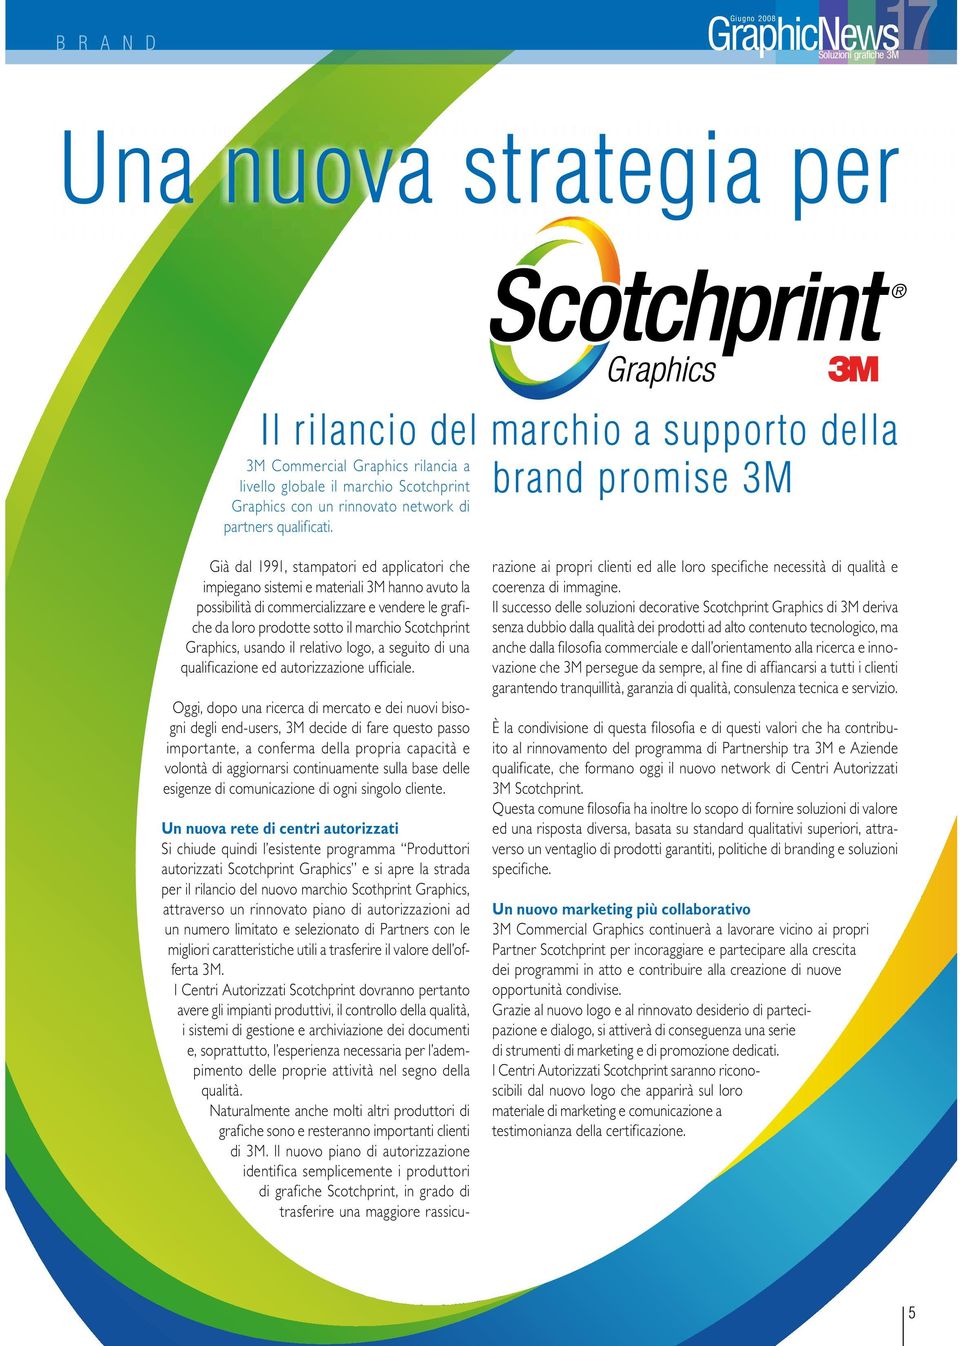 Già dal 1991, stampatori ed applicatori che impiegano sistemi e materiali 3M hanno avuto la possibilità di commercializzare e vendere le grafiche da loro prodotte sotto il marchio Scotchprint